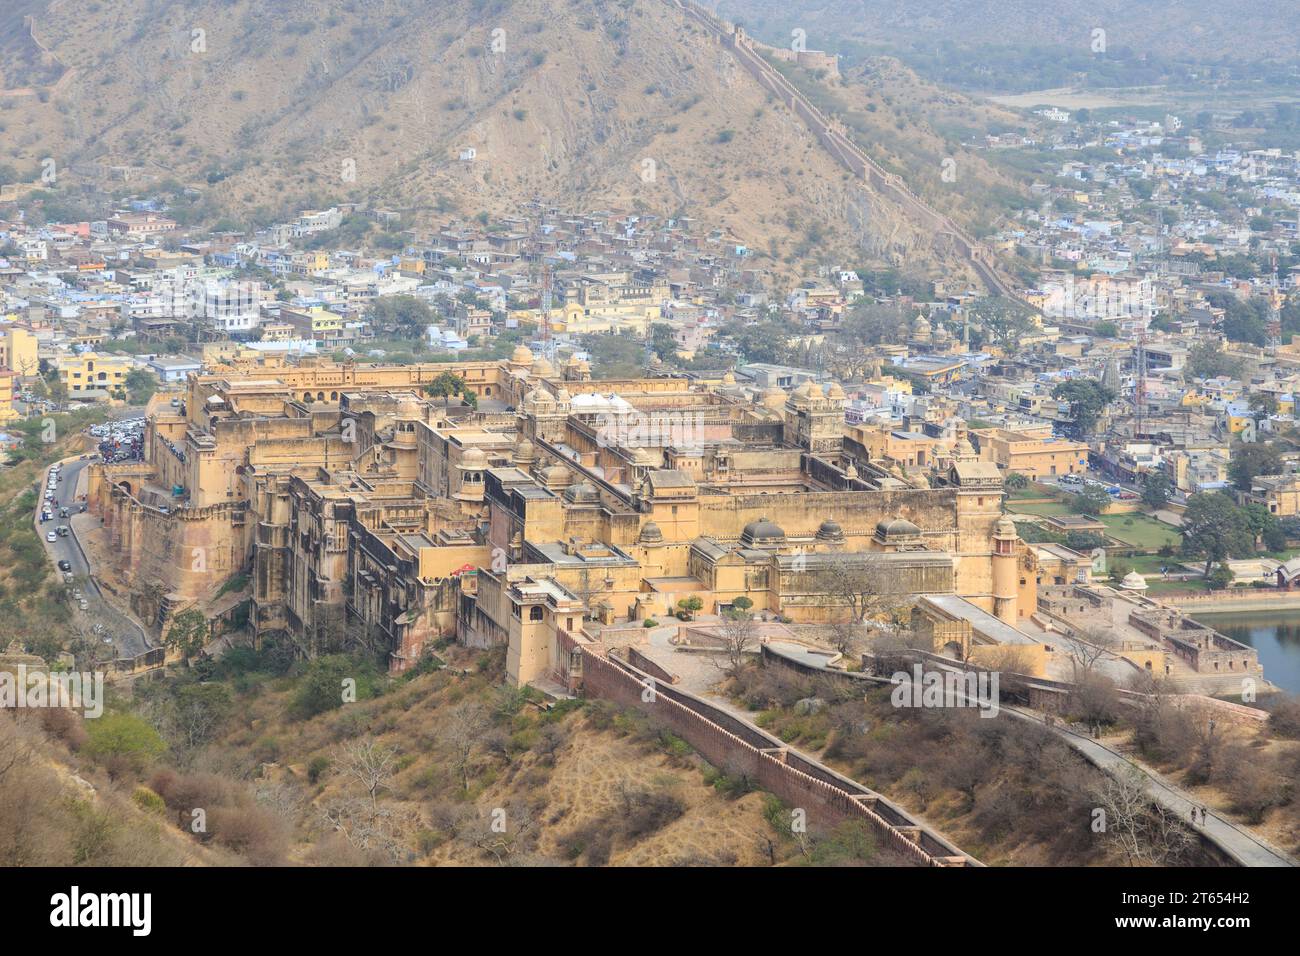 Festung von Amber, Amber Fort, Blick vom Fort Jaigarh Jaipur, Rajasthan, Indien Stock Photo